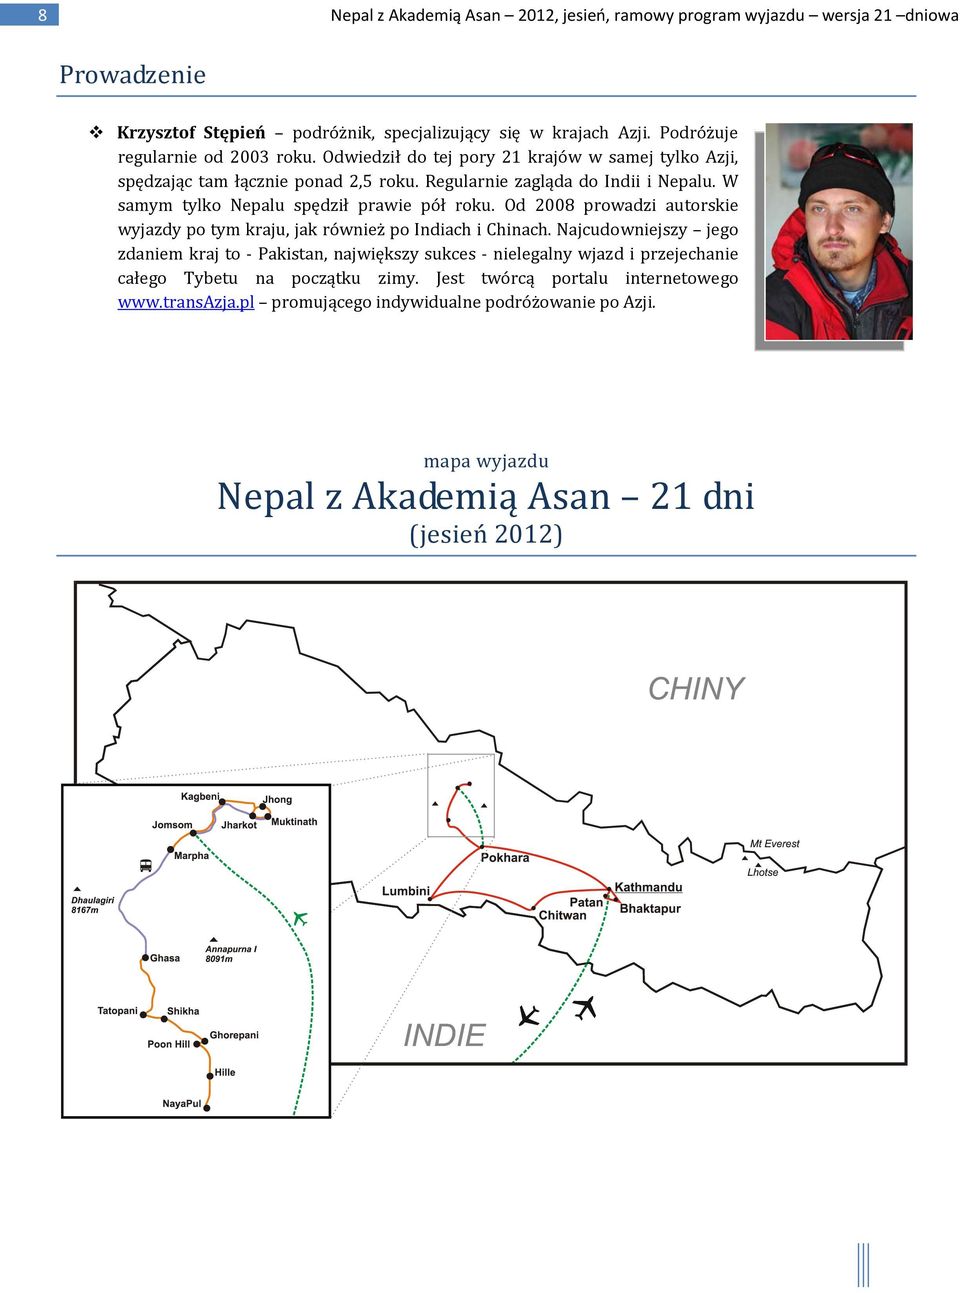 W samym tylko Nepalu spędził prawie pół roku. Od 2008 prowadzi autorskie wyjazdy po tym kraju, jak również po Indiach i Chinach.